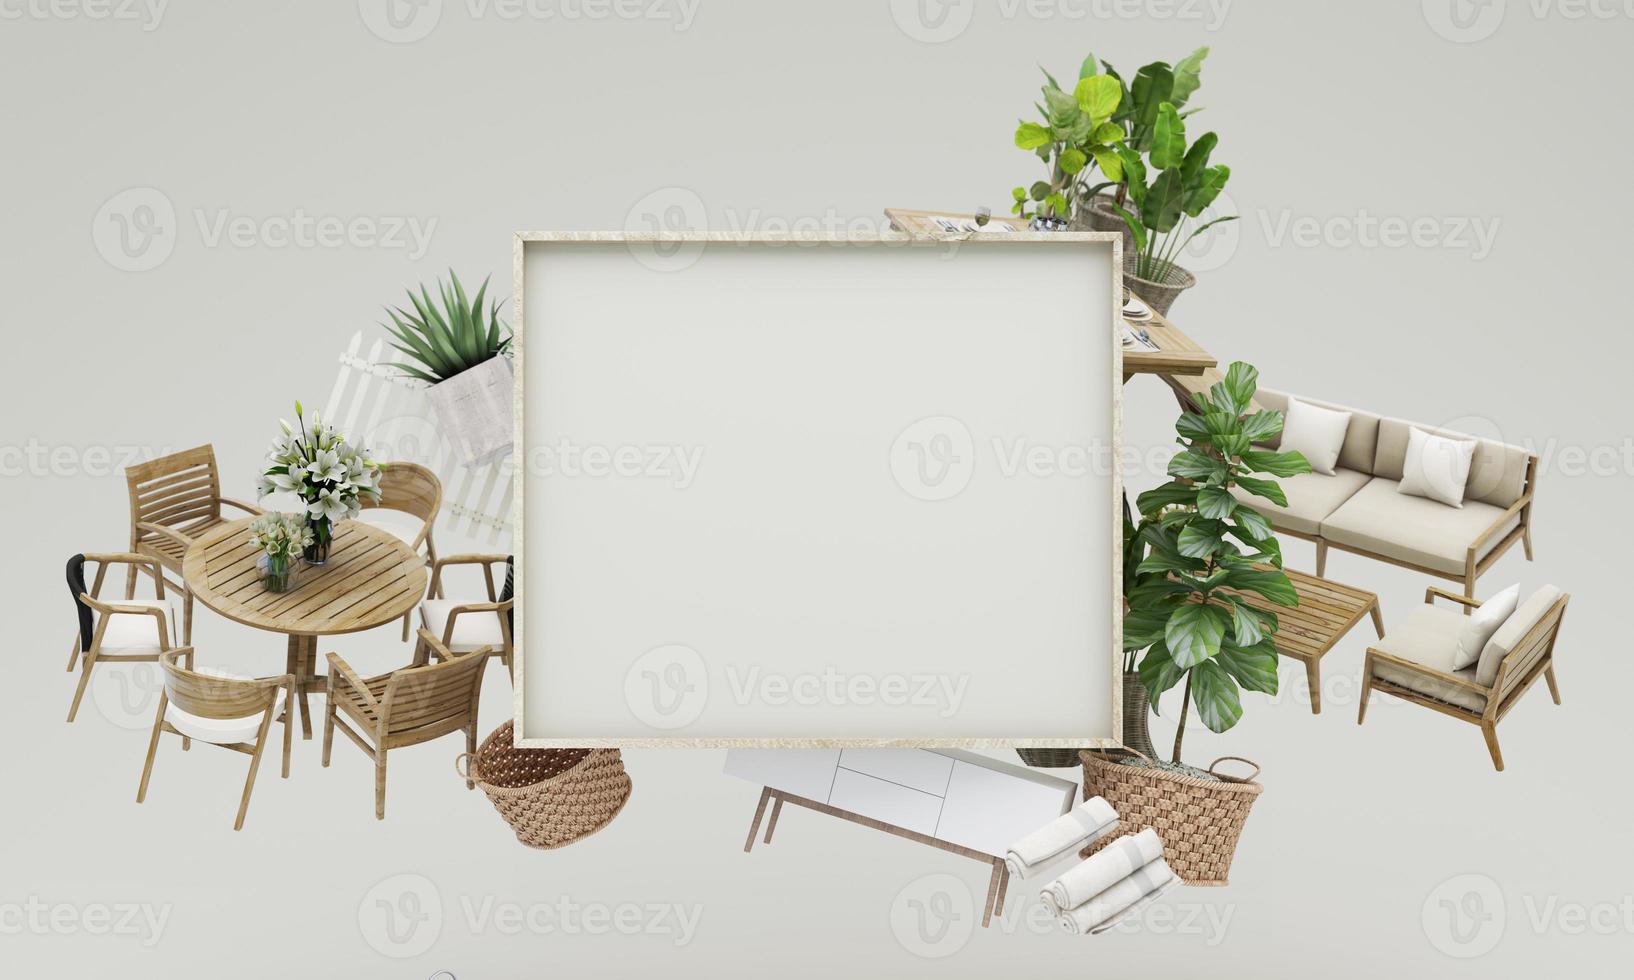 utomhus- begrepp försäljning av Hem dekorationer och möbel under kampanjer och rabatter, den är omgiven förbi tabell, stol, fåtöljer och reklam utrymmen baner. pastell bakgrund. 3d framställa foto